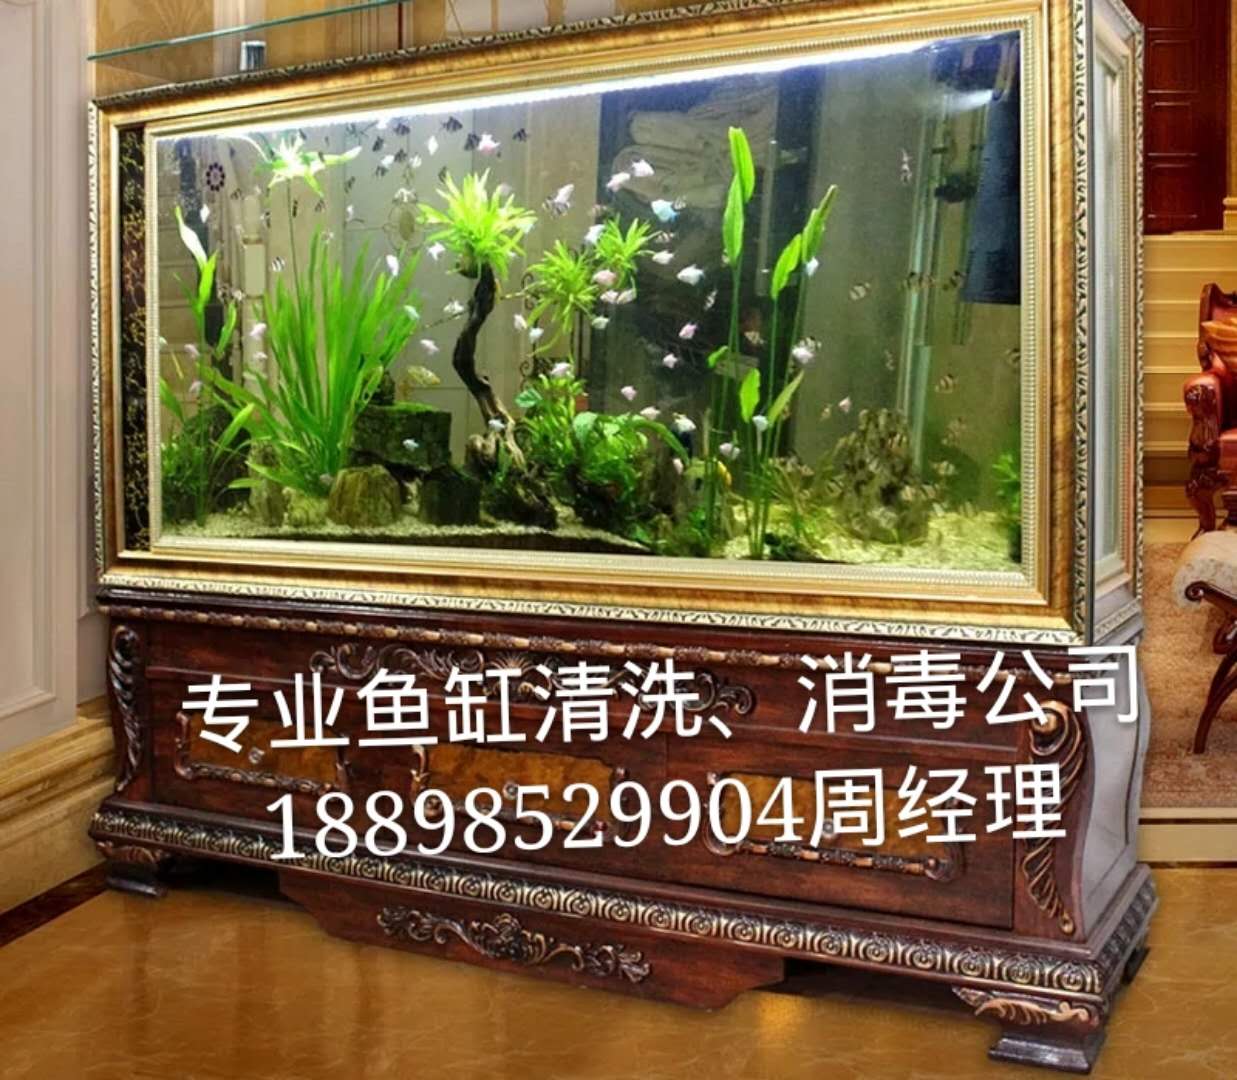 广州鱼缸清洗、天河鱼缸清洗 广州专业鱼缸清洗公司 鱼缸护理